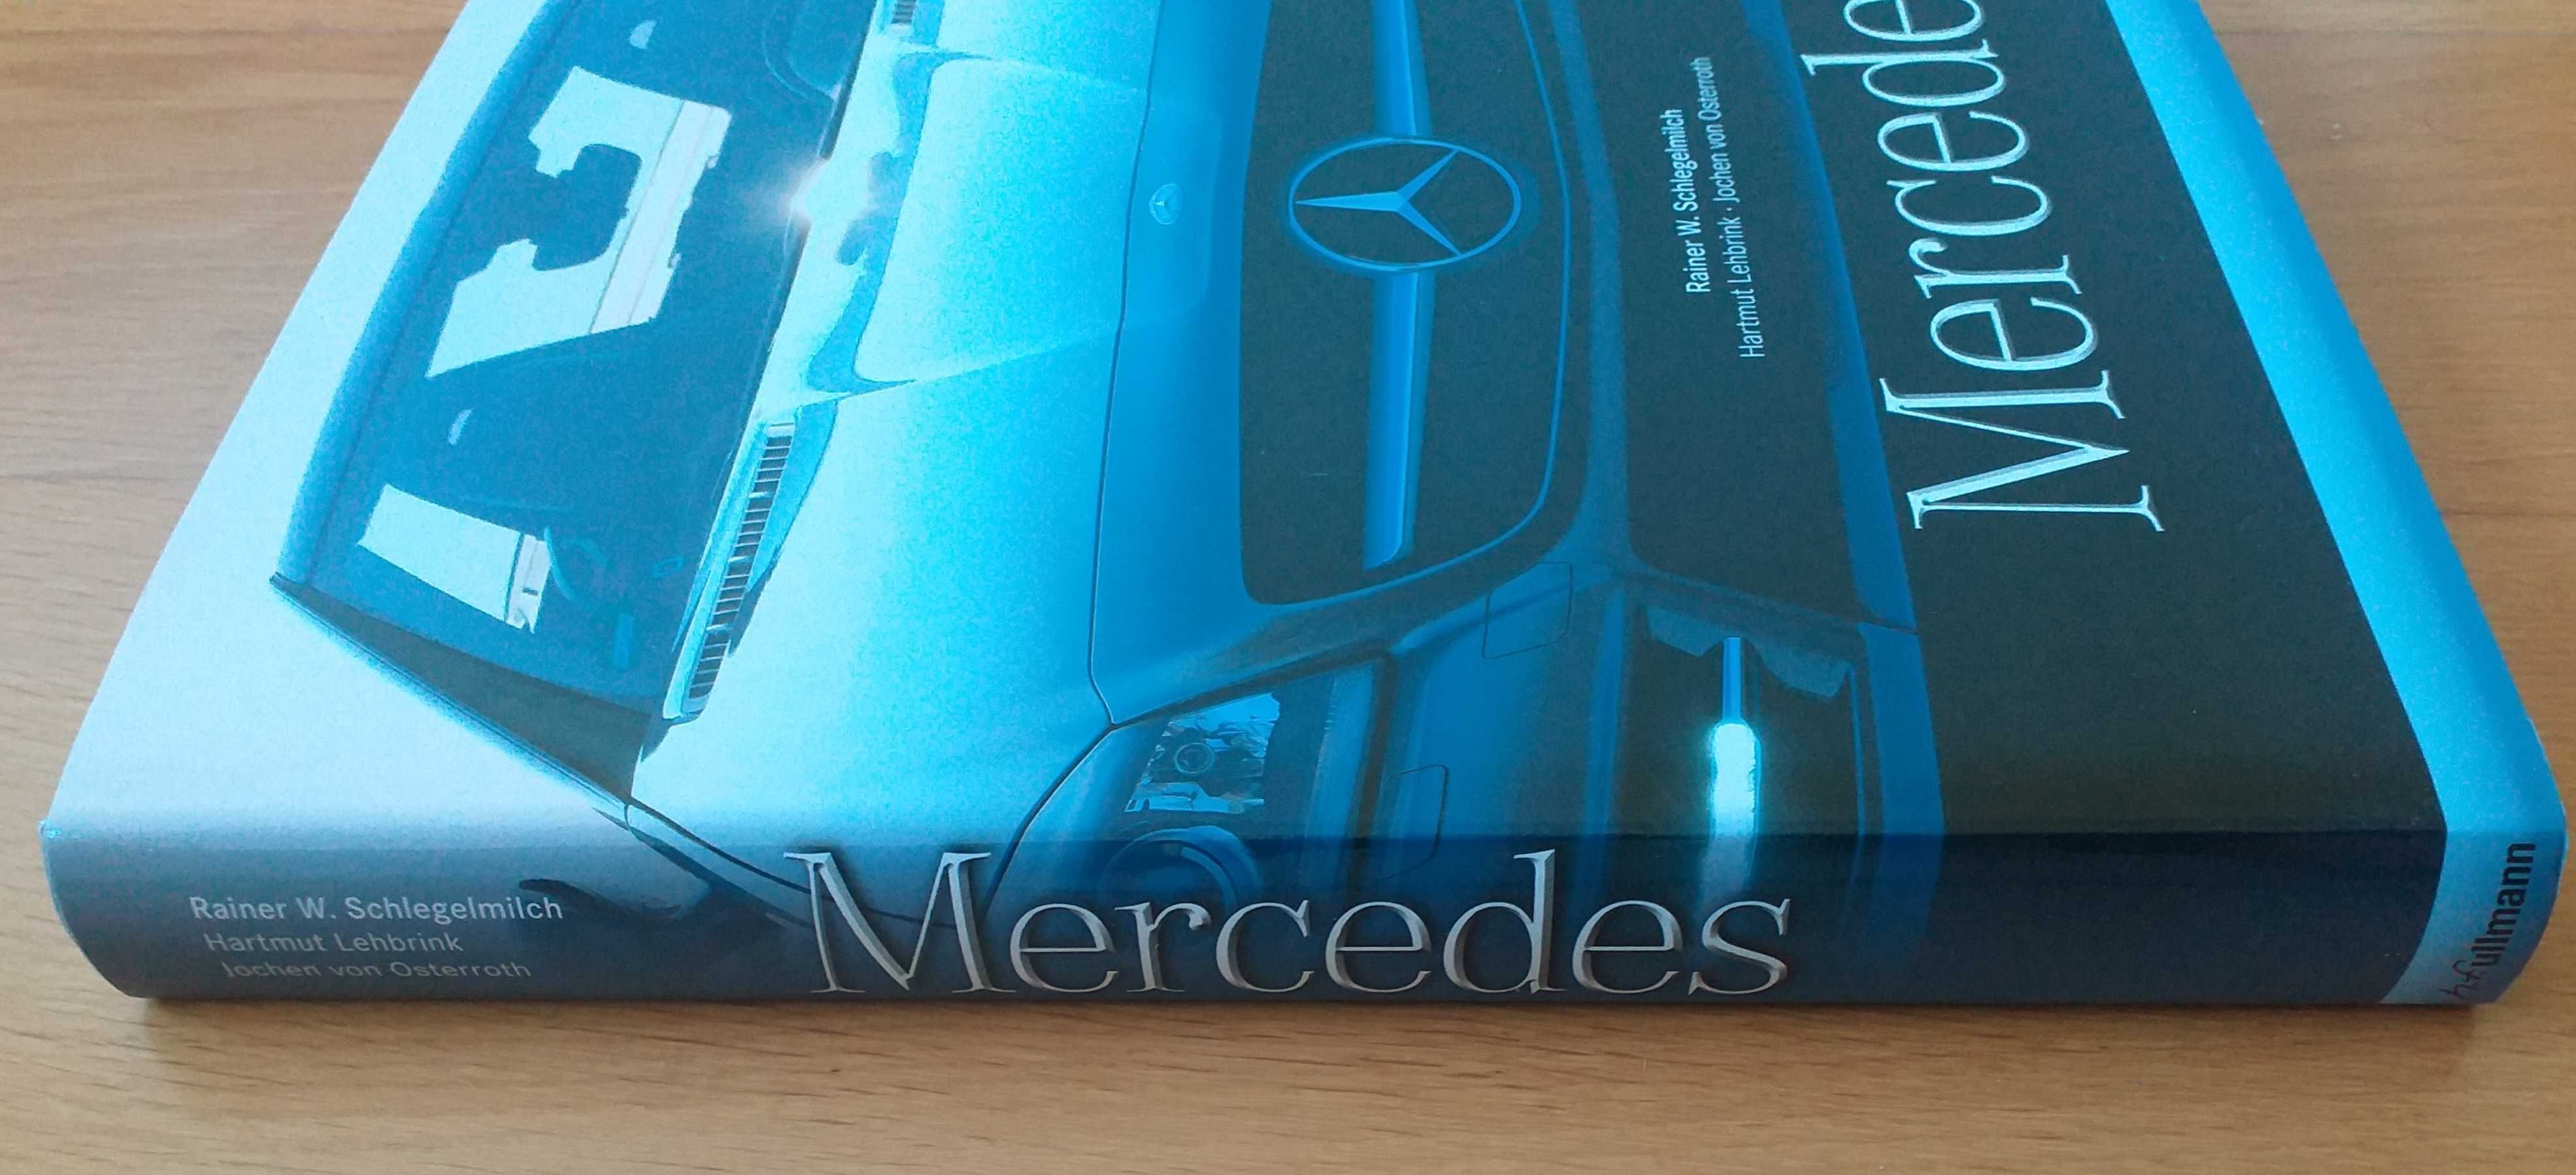 Livro "Mercedes" de Rainer W. Schlegelmilch, novo